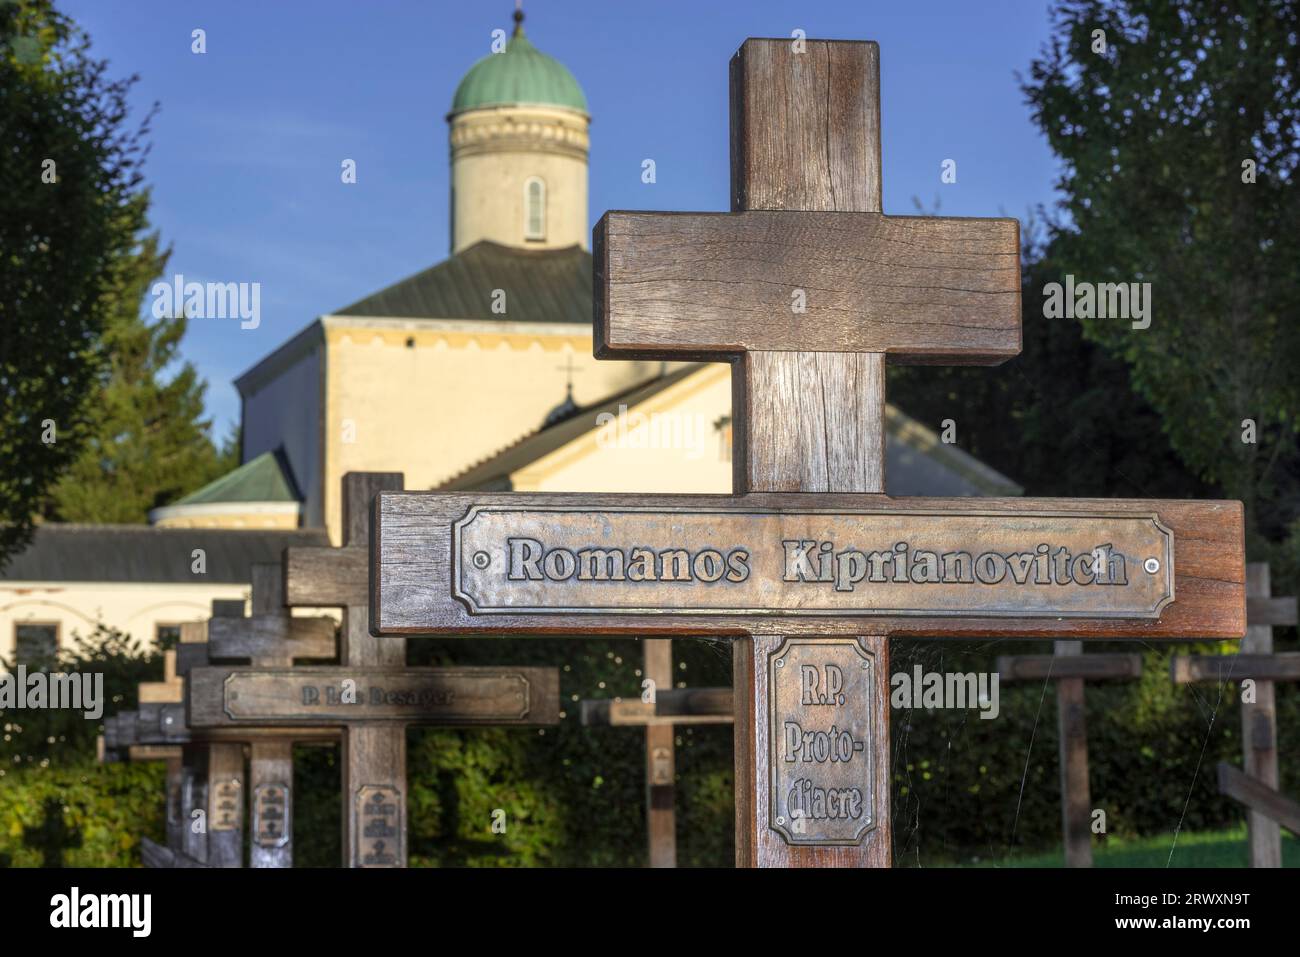 Croix orthodoxe en bois sur cimetière de l'Abbaye de Chevetogne / Abbaye de Chevetogne, monastère bénédictin catholique près de Ciney, Namur, Wallonie, Belgique Banque D'Images